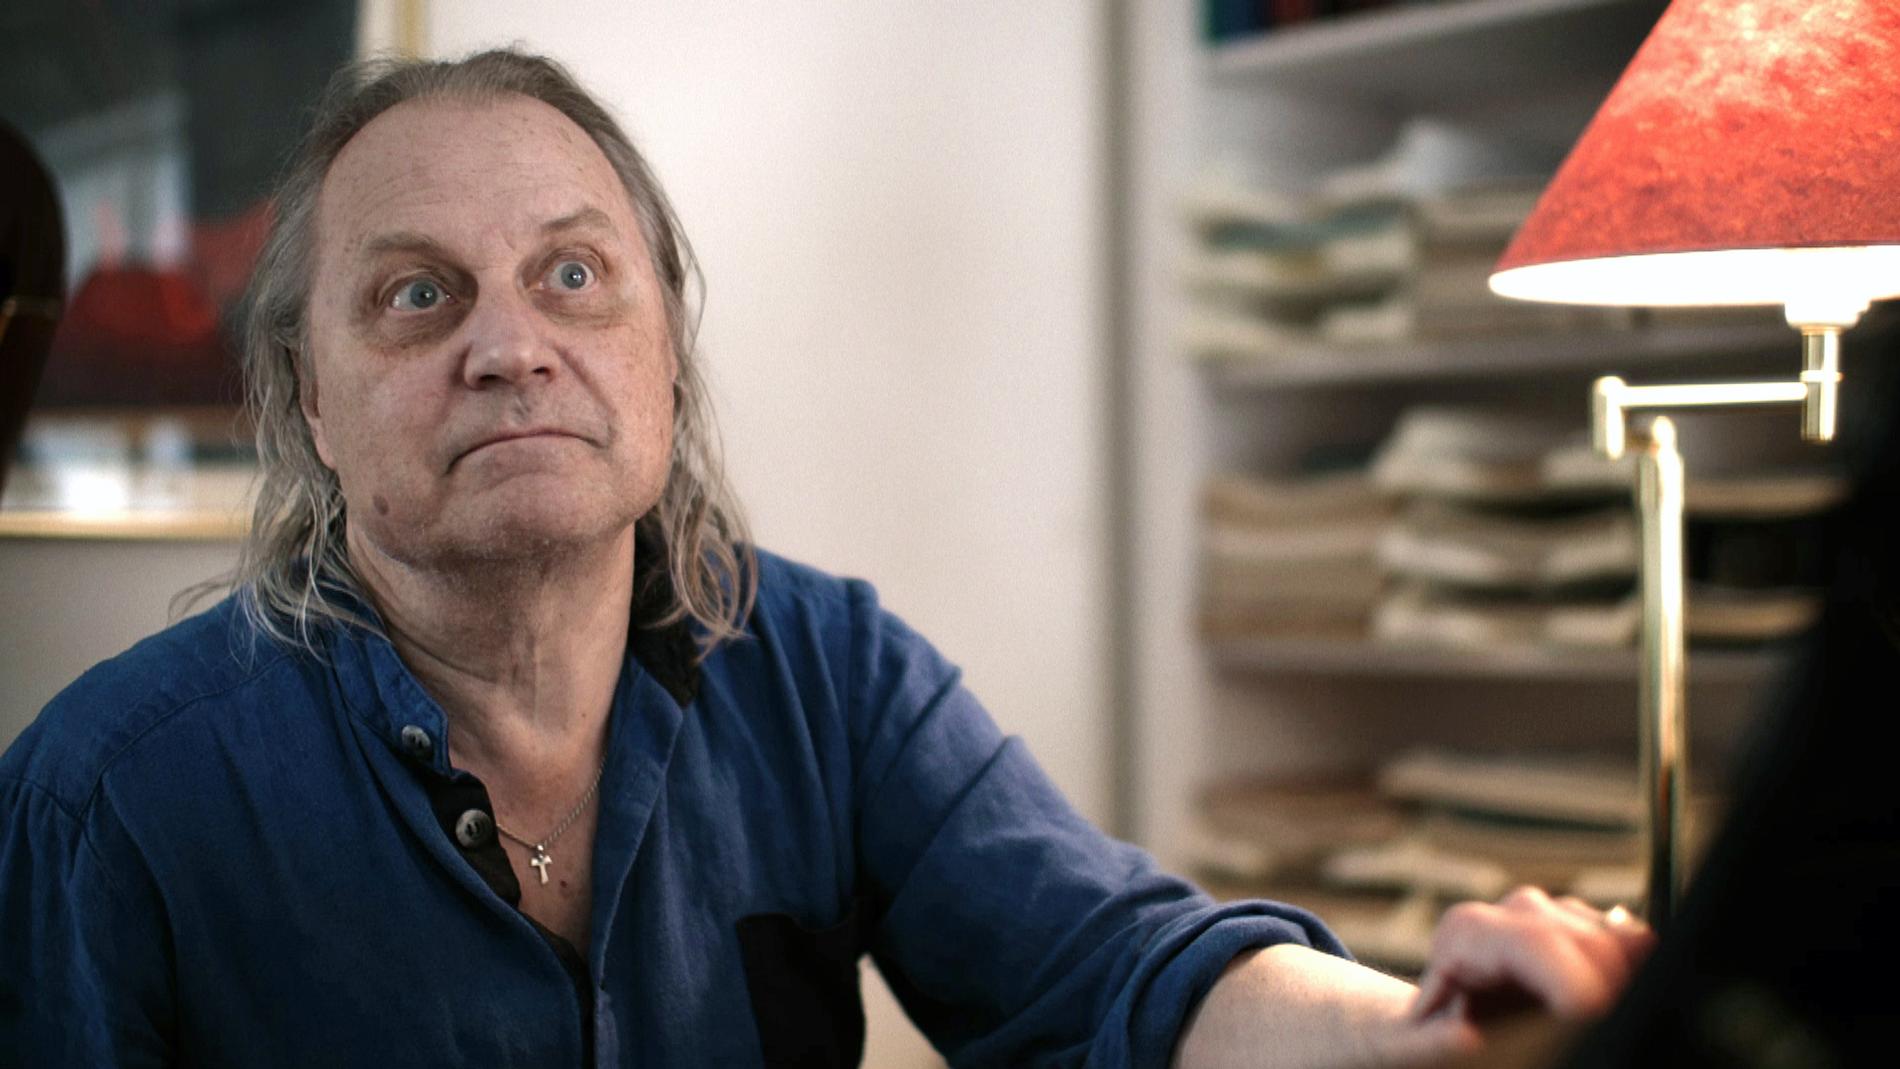 Musikern Stefan Nilsson gick nyligen bort i ALS. Hans sista tid skildrades i en dokumentär på SVT.